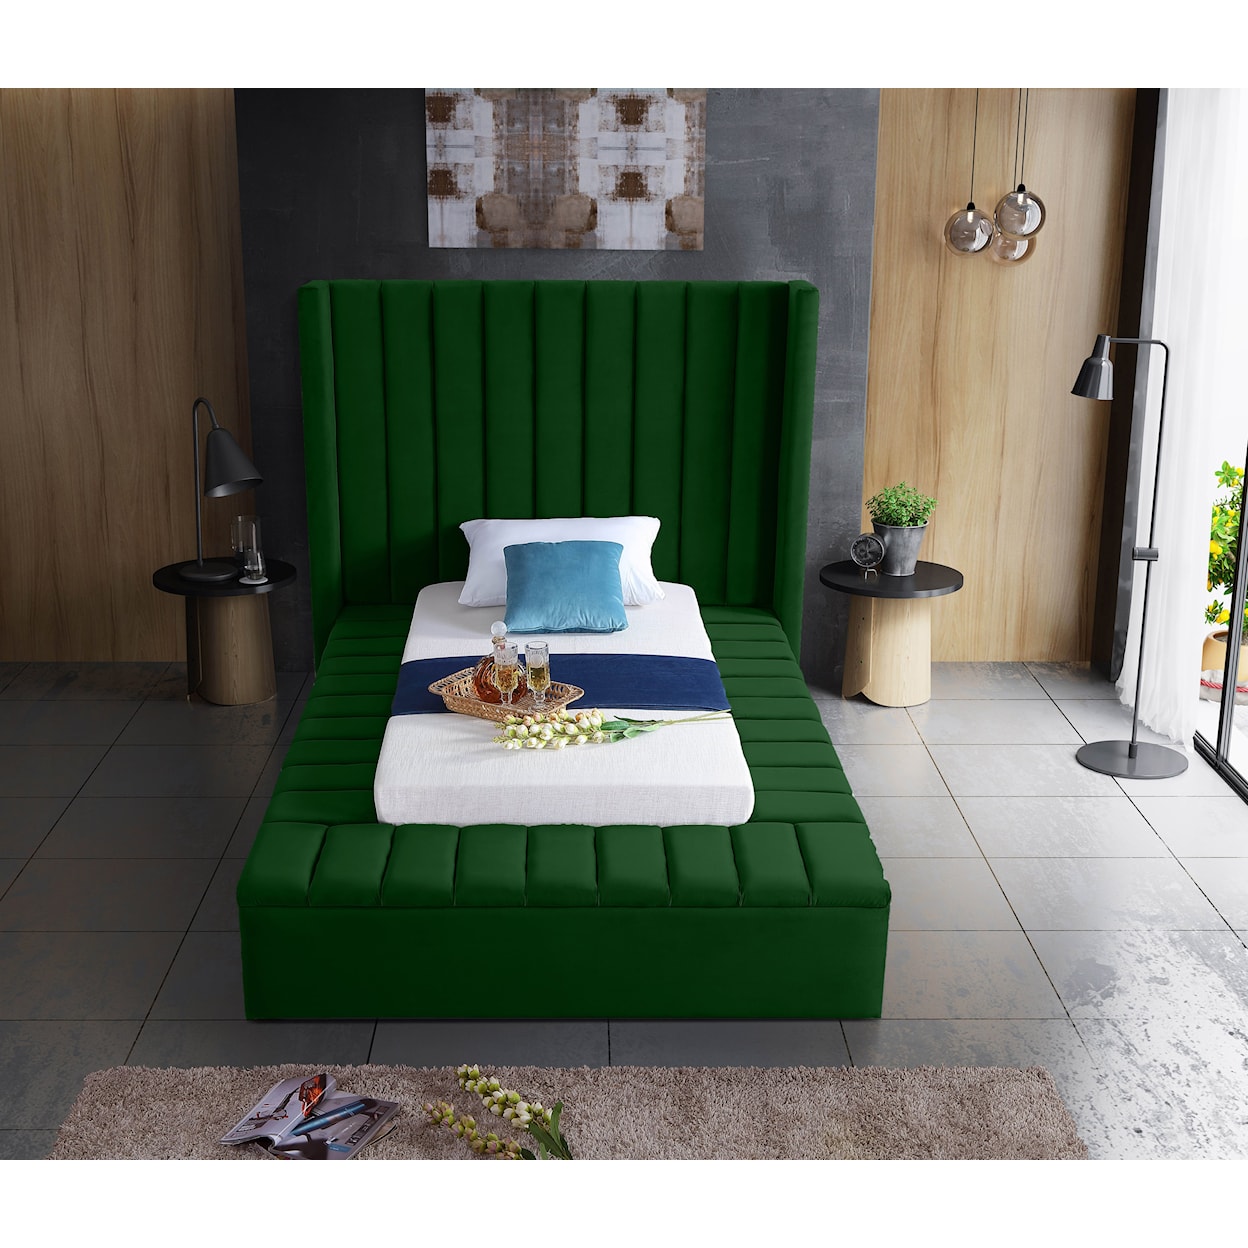 Meridian Furniture Kiki Twin Bed (3 Boxes)